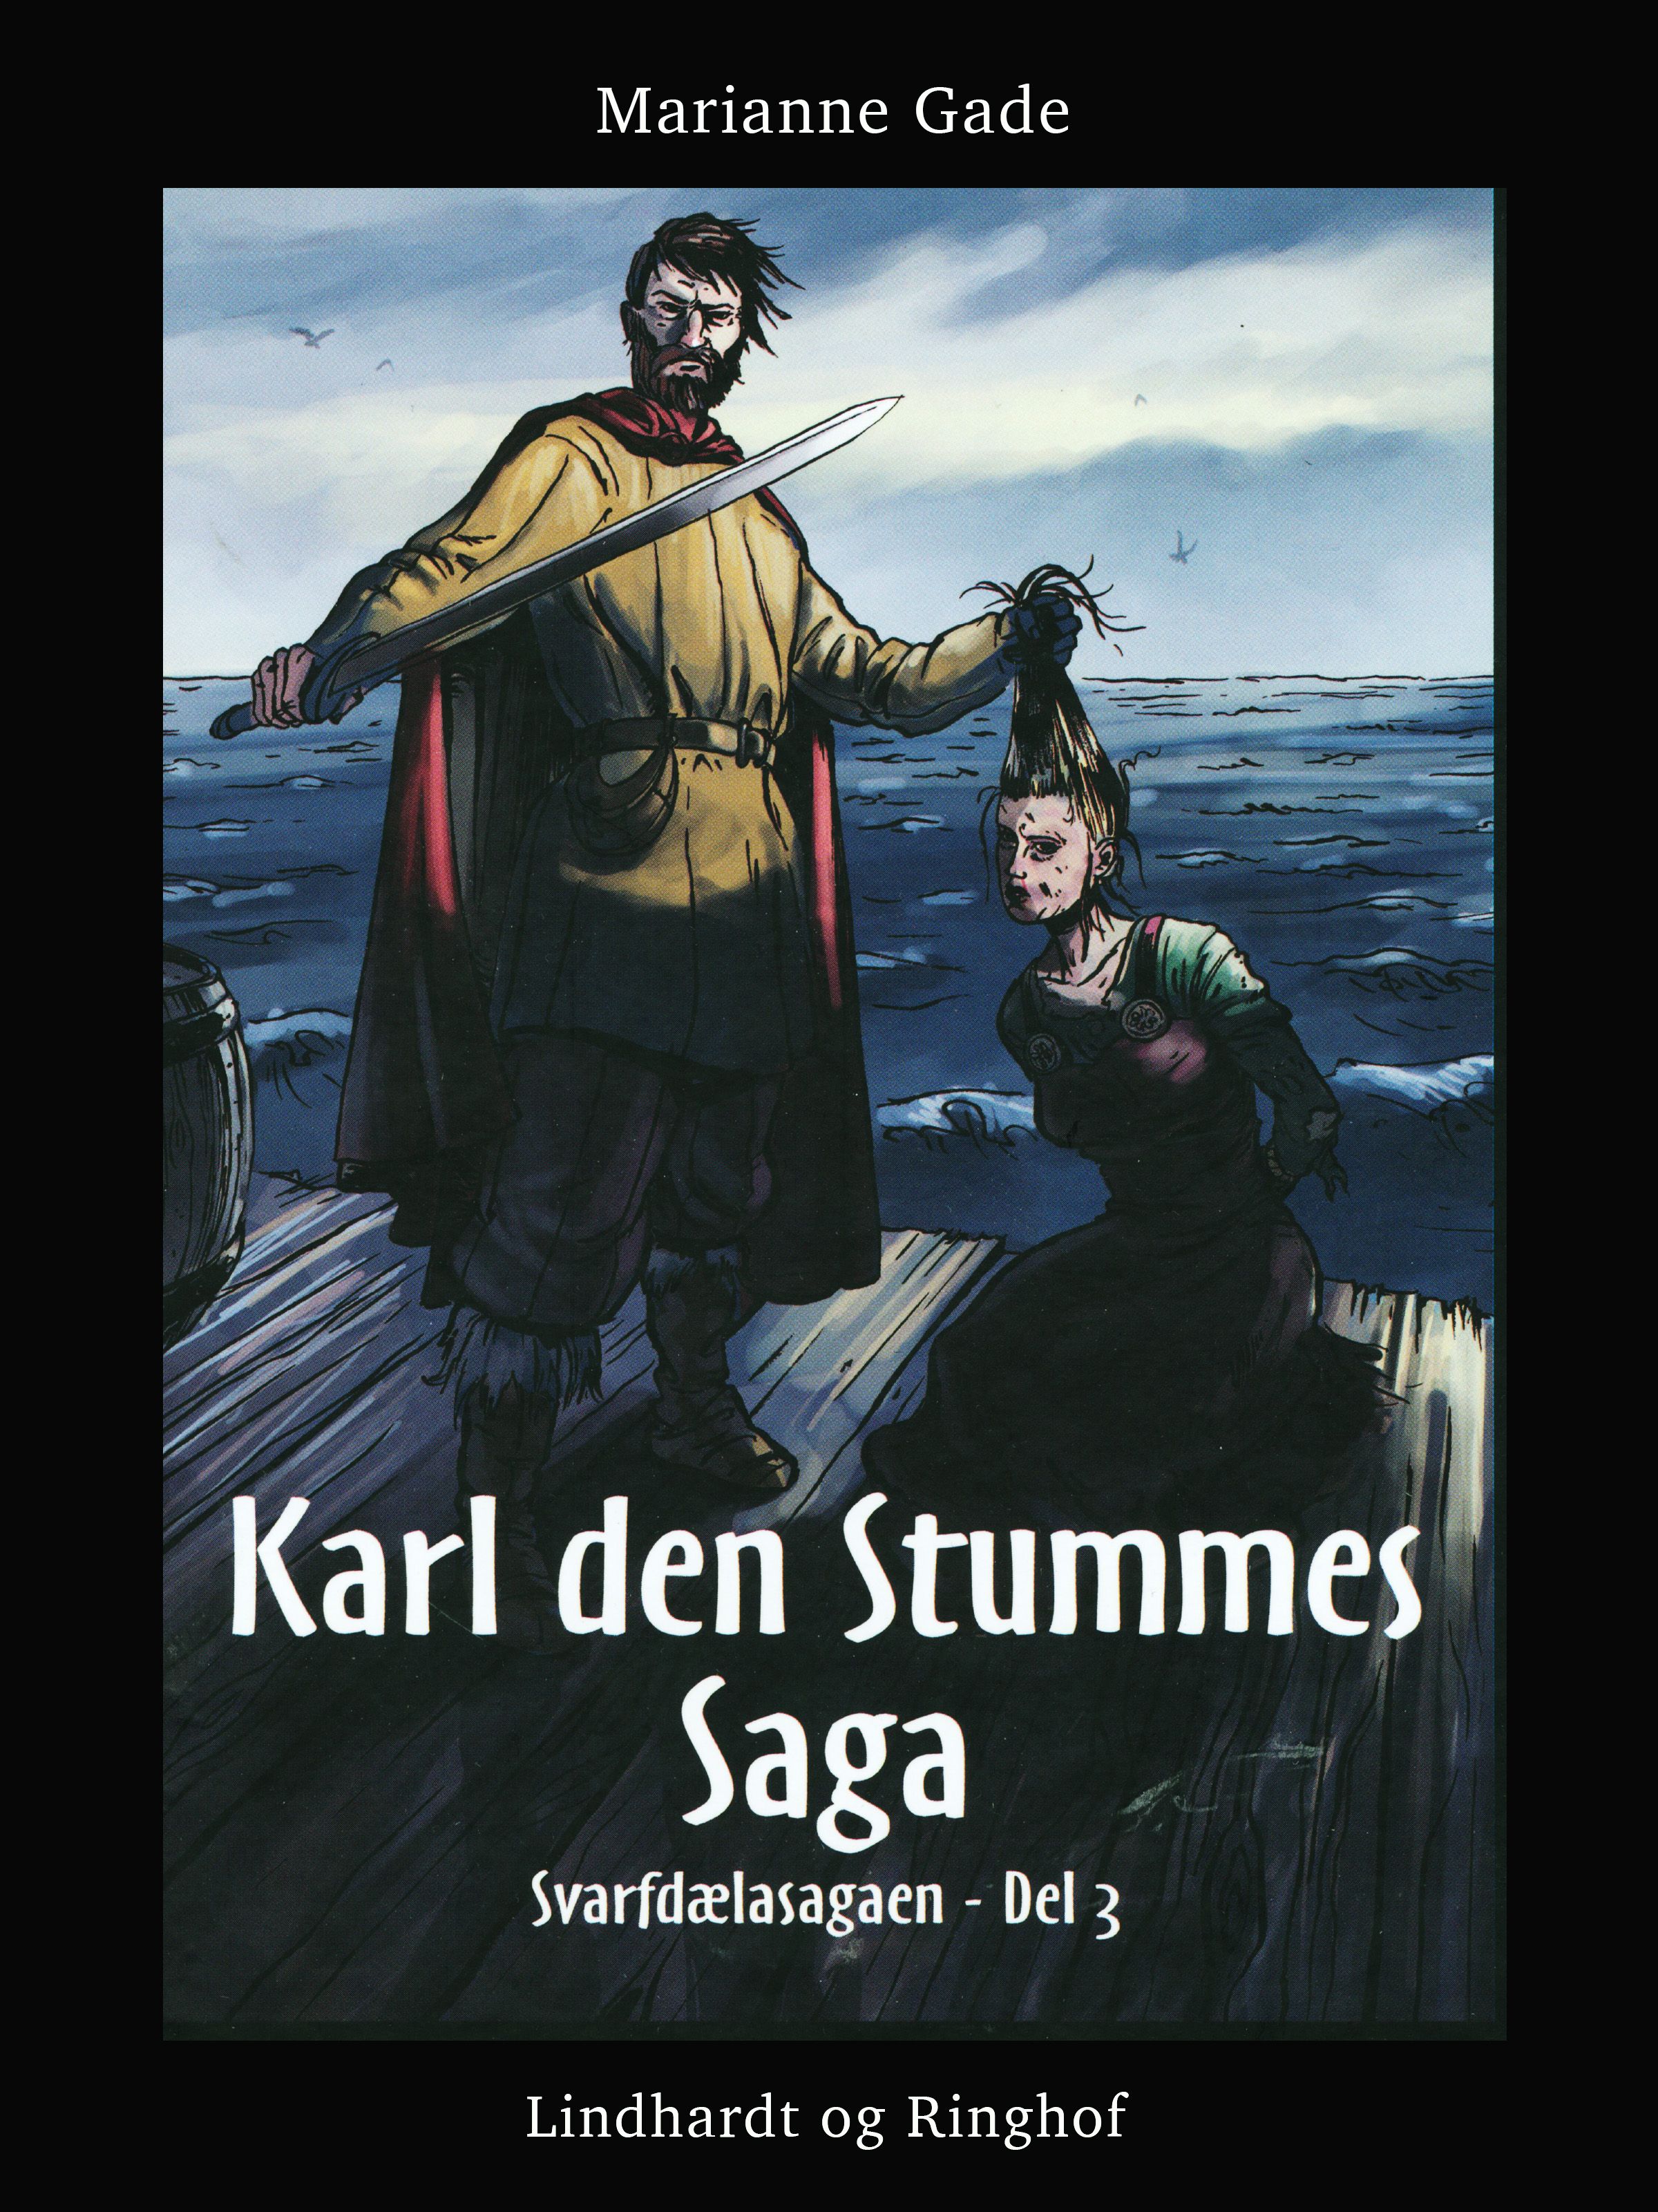 Karl den Stummes saga, e-bok av Marianne Gade